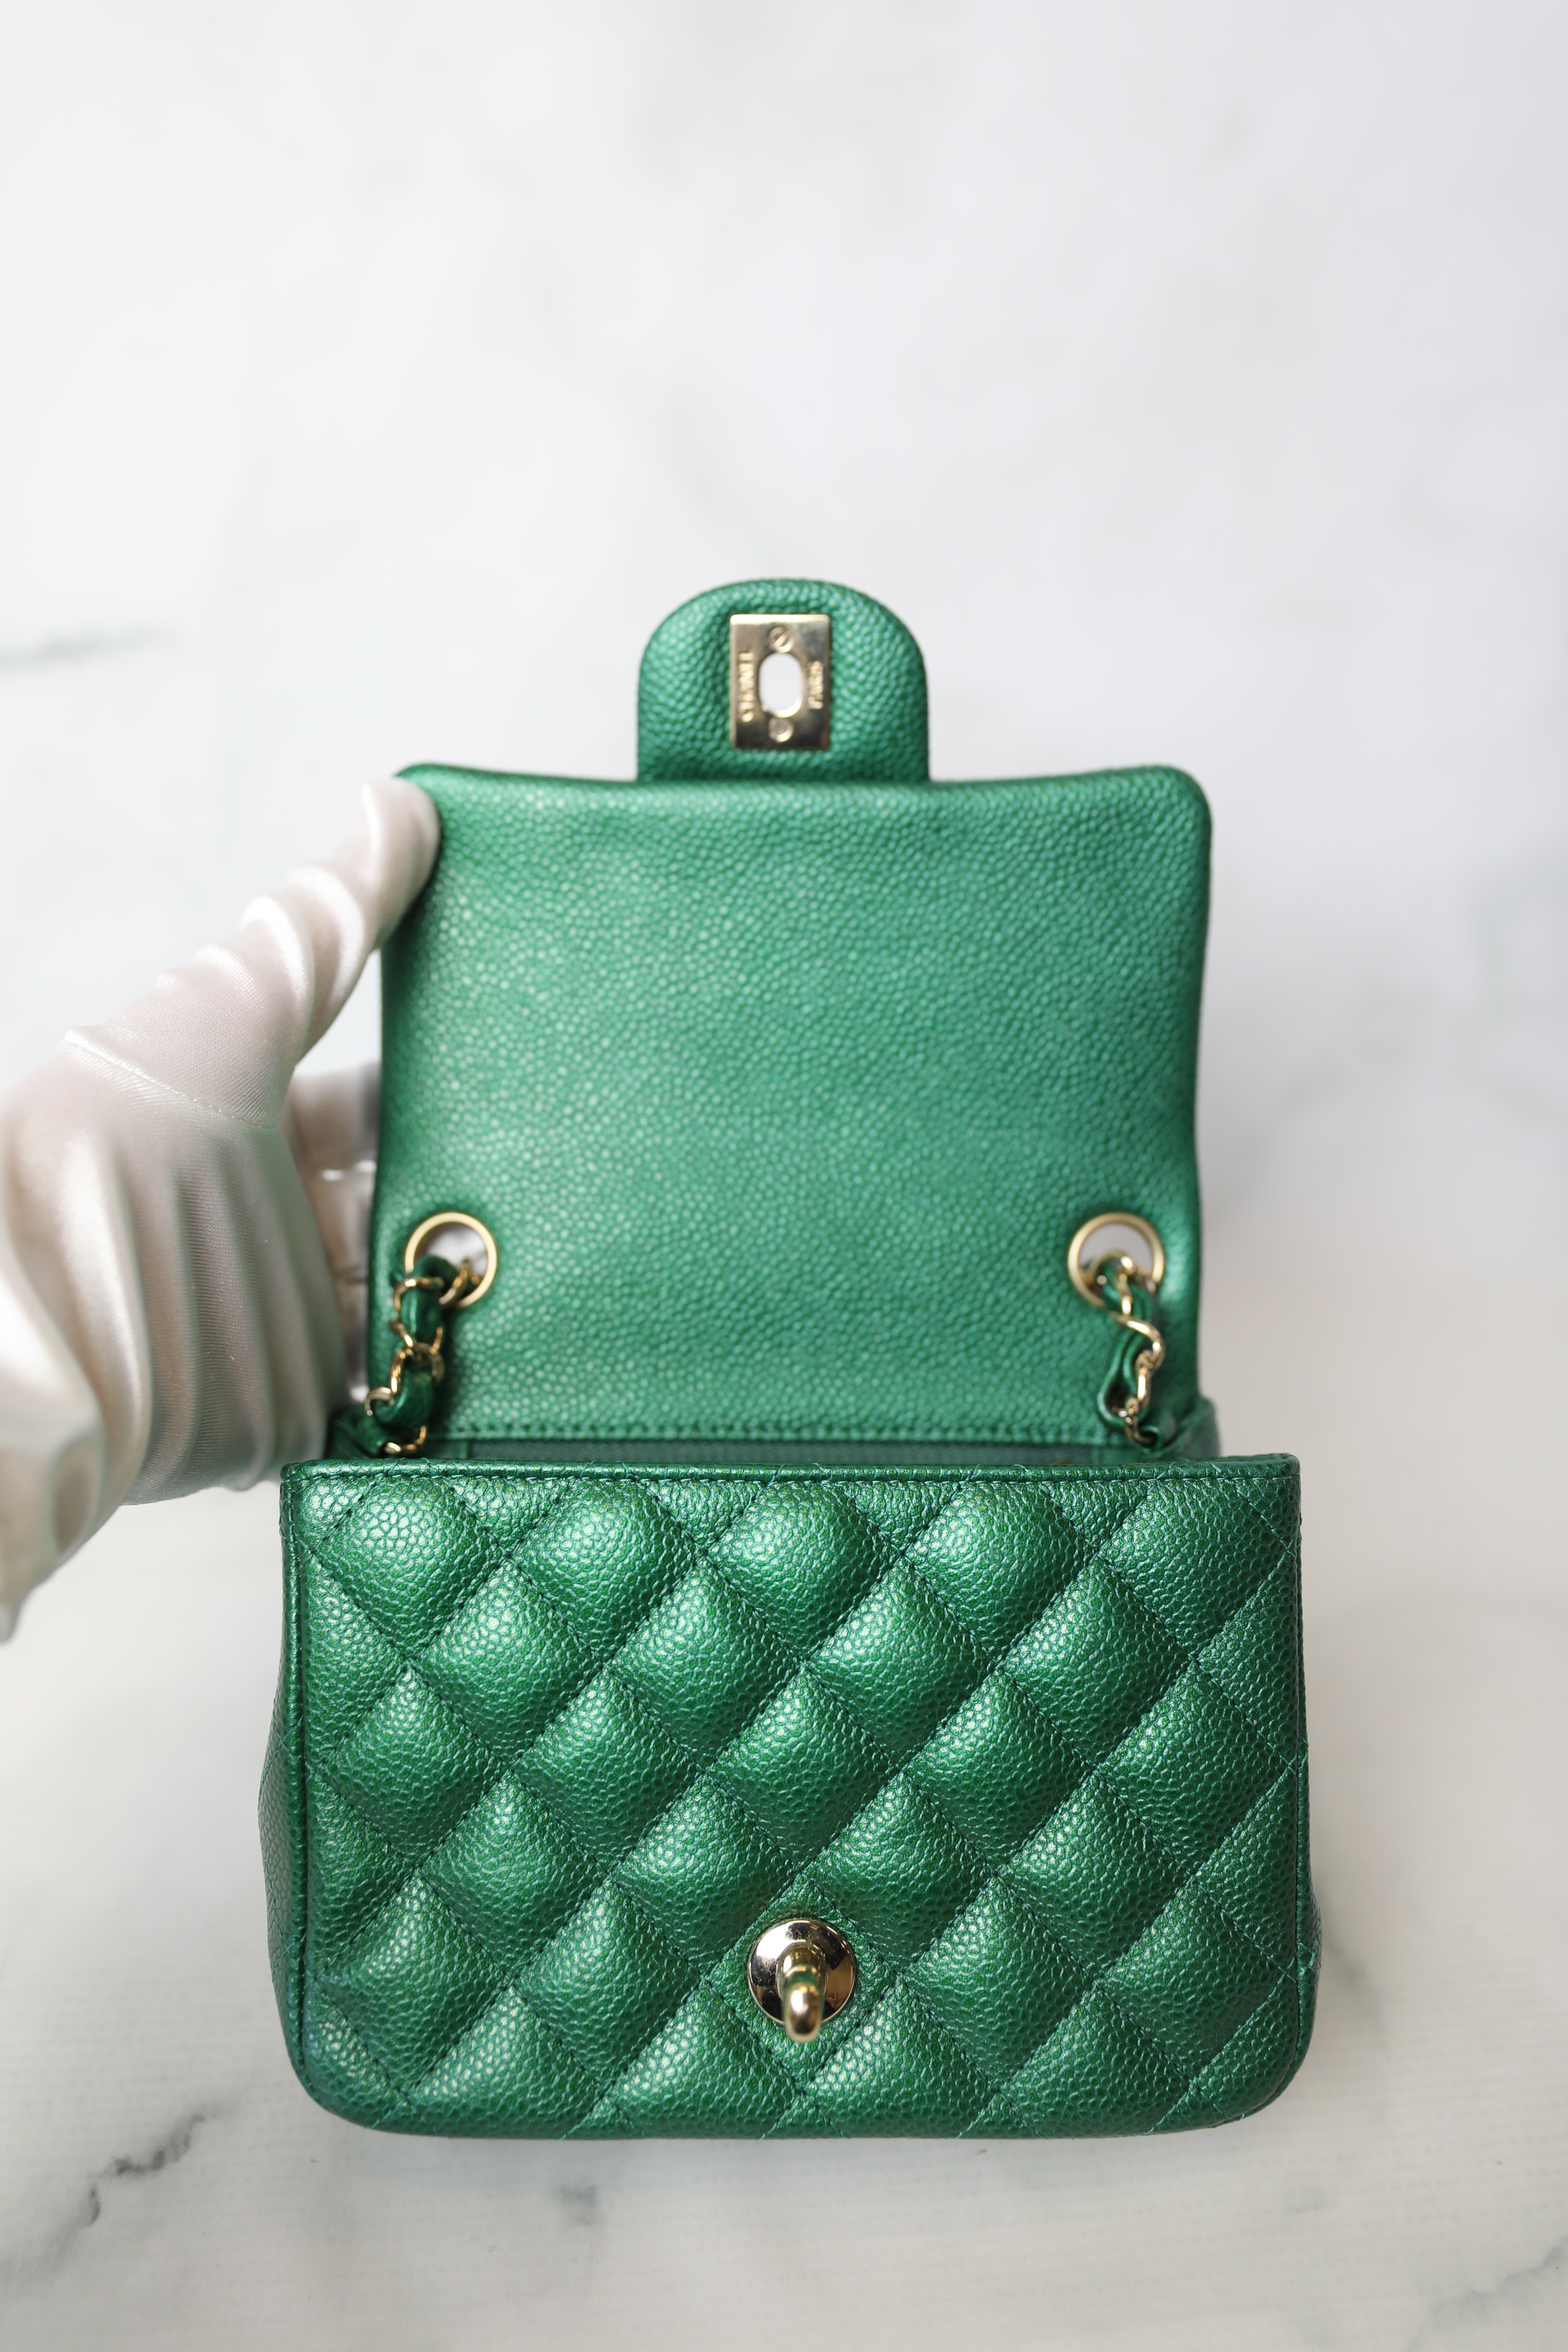 Chanel Classic Mini Square, 18S Emerald Green Cavwith Gold Hardware,  Preowned in Box WA001 - Julia Rose Boston